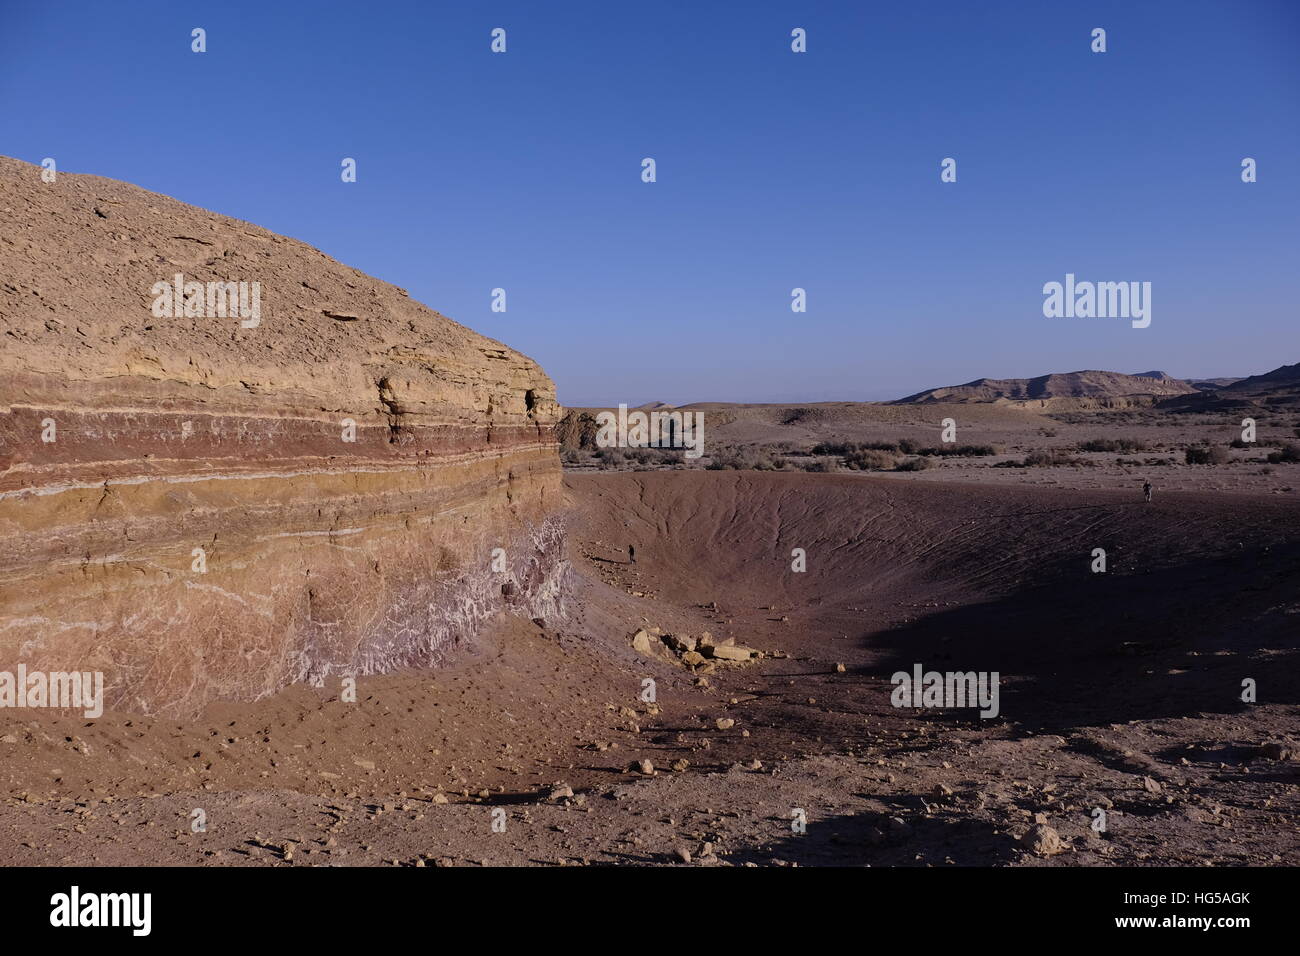 Un dyke magmatique des couches horizontales des bandes de couleur dans une roche sédimentaire à Beerot Khan au milieu du grand cratère Makhtesh Ramon un relief géologique considéré comme unique pour le désert du Néguev dans le sud d'Israël Banque D'Images